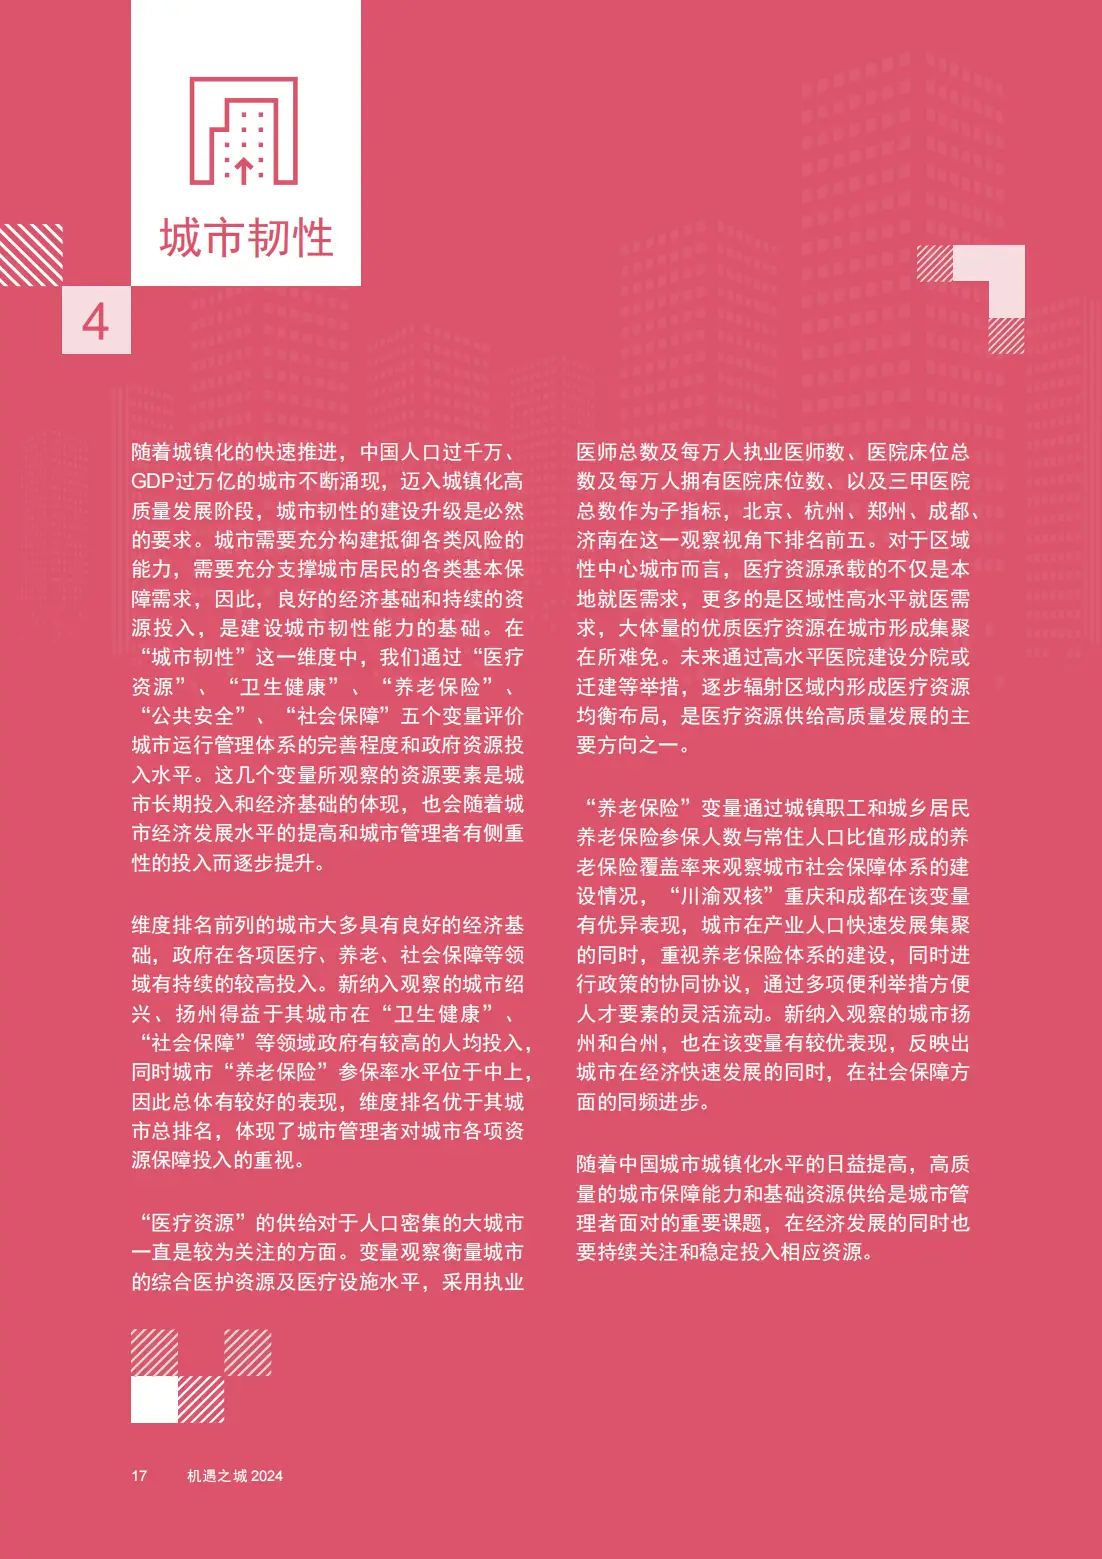 最新公布:2005金融蓝皮书发布 把脉中国金融业发展趋势.pdf 4